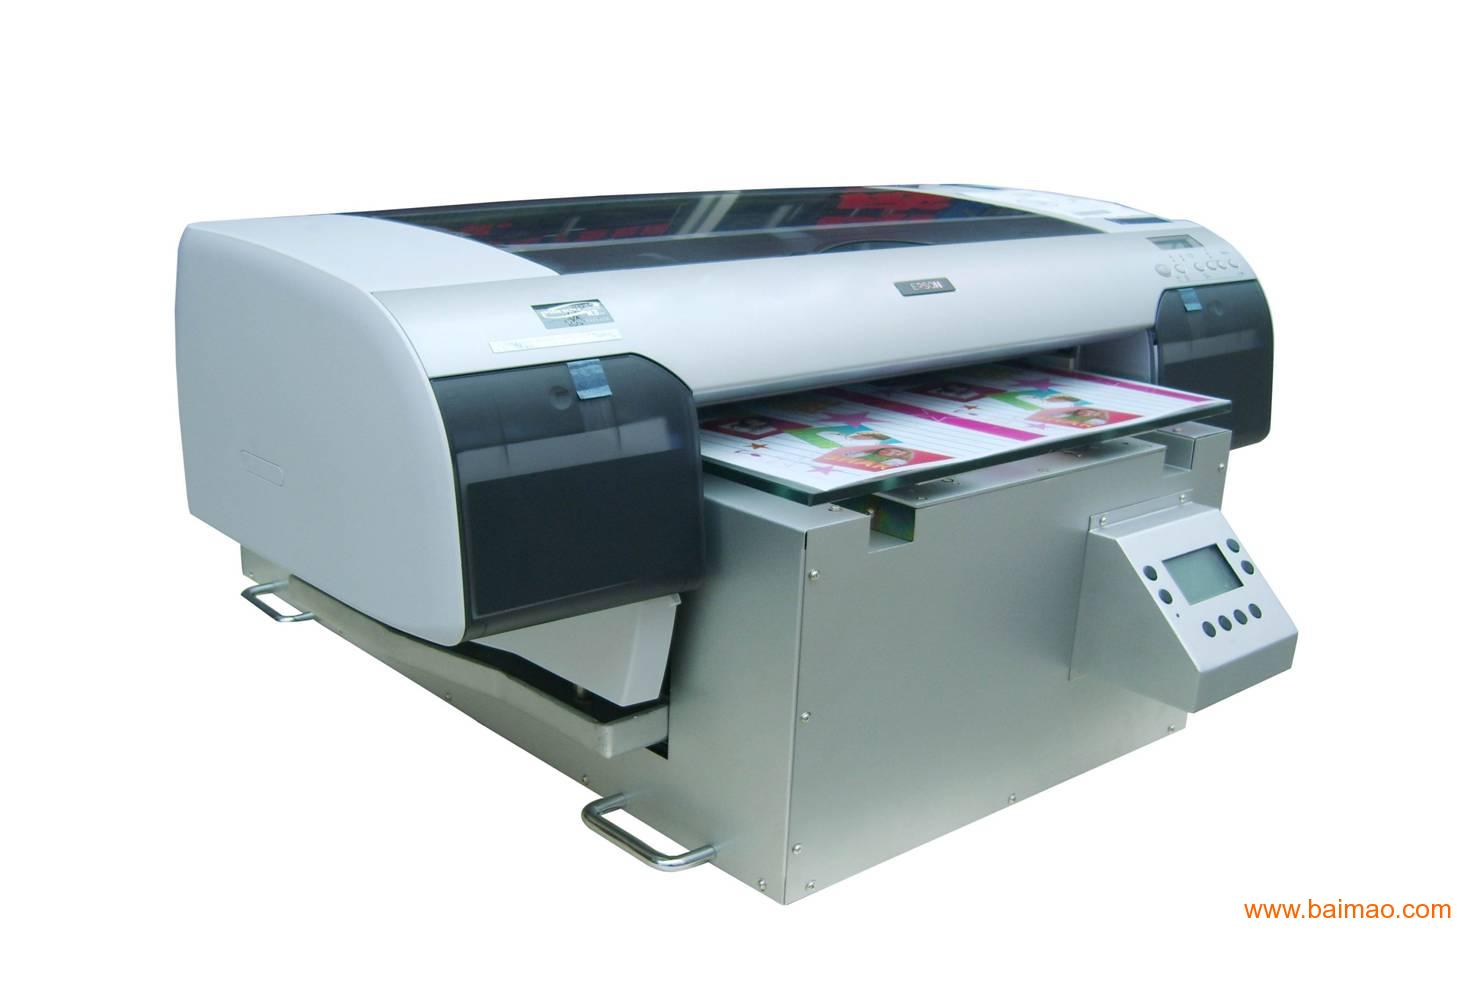 保温袋印刷机,喷墨打印机,产品喷绘机